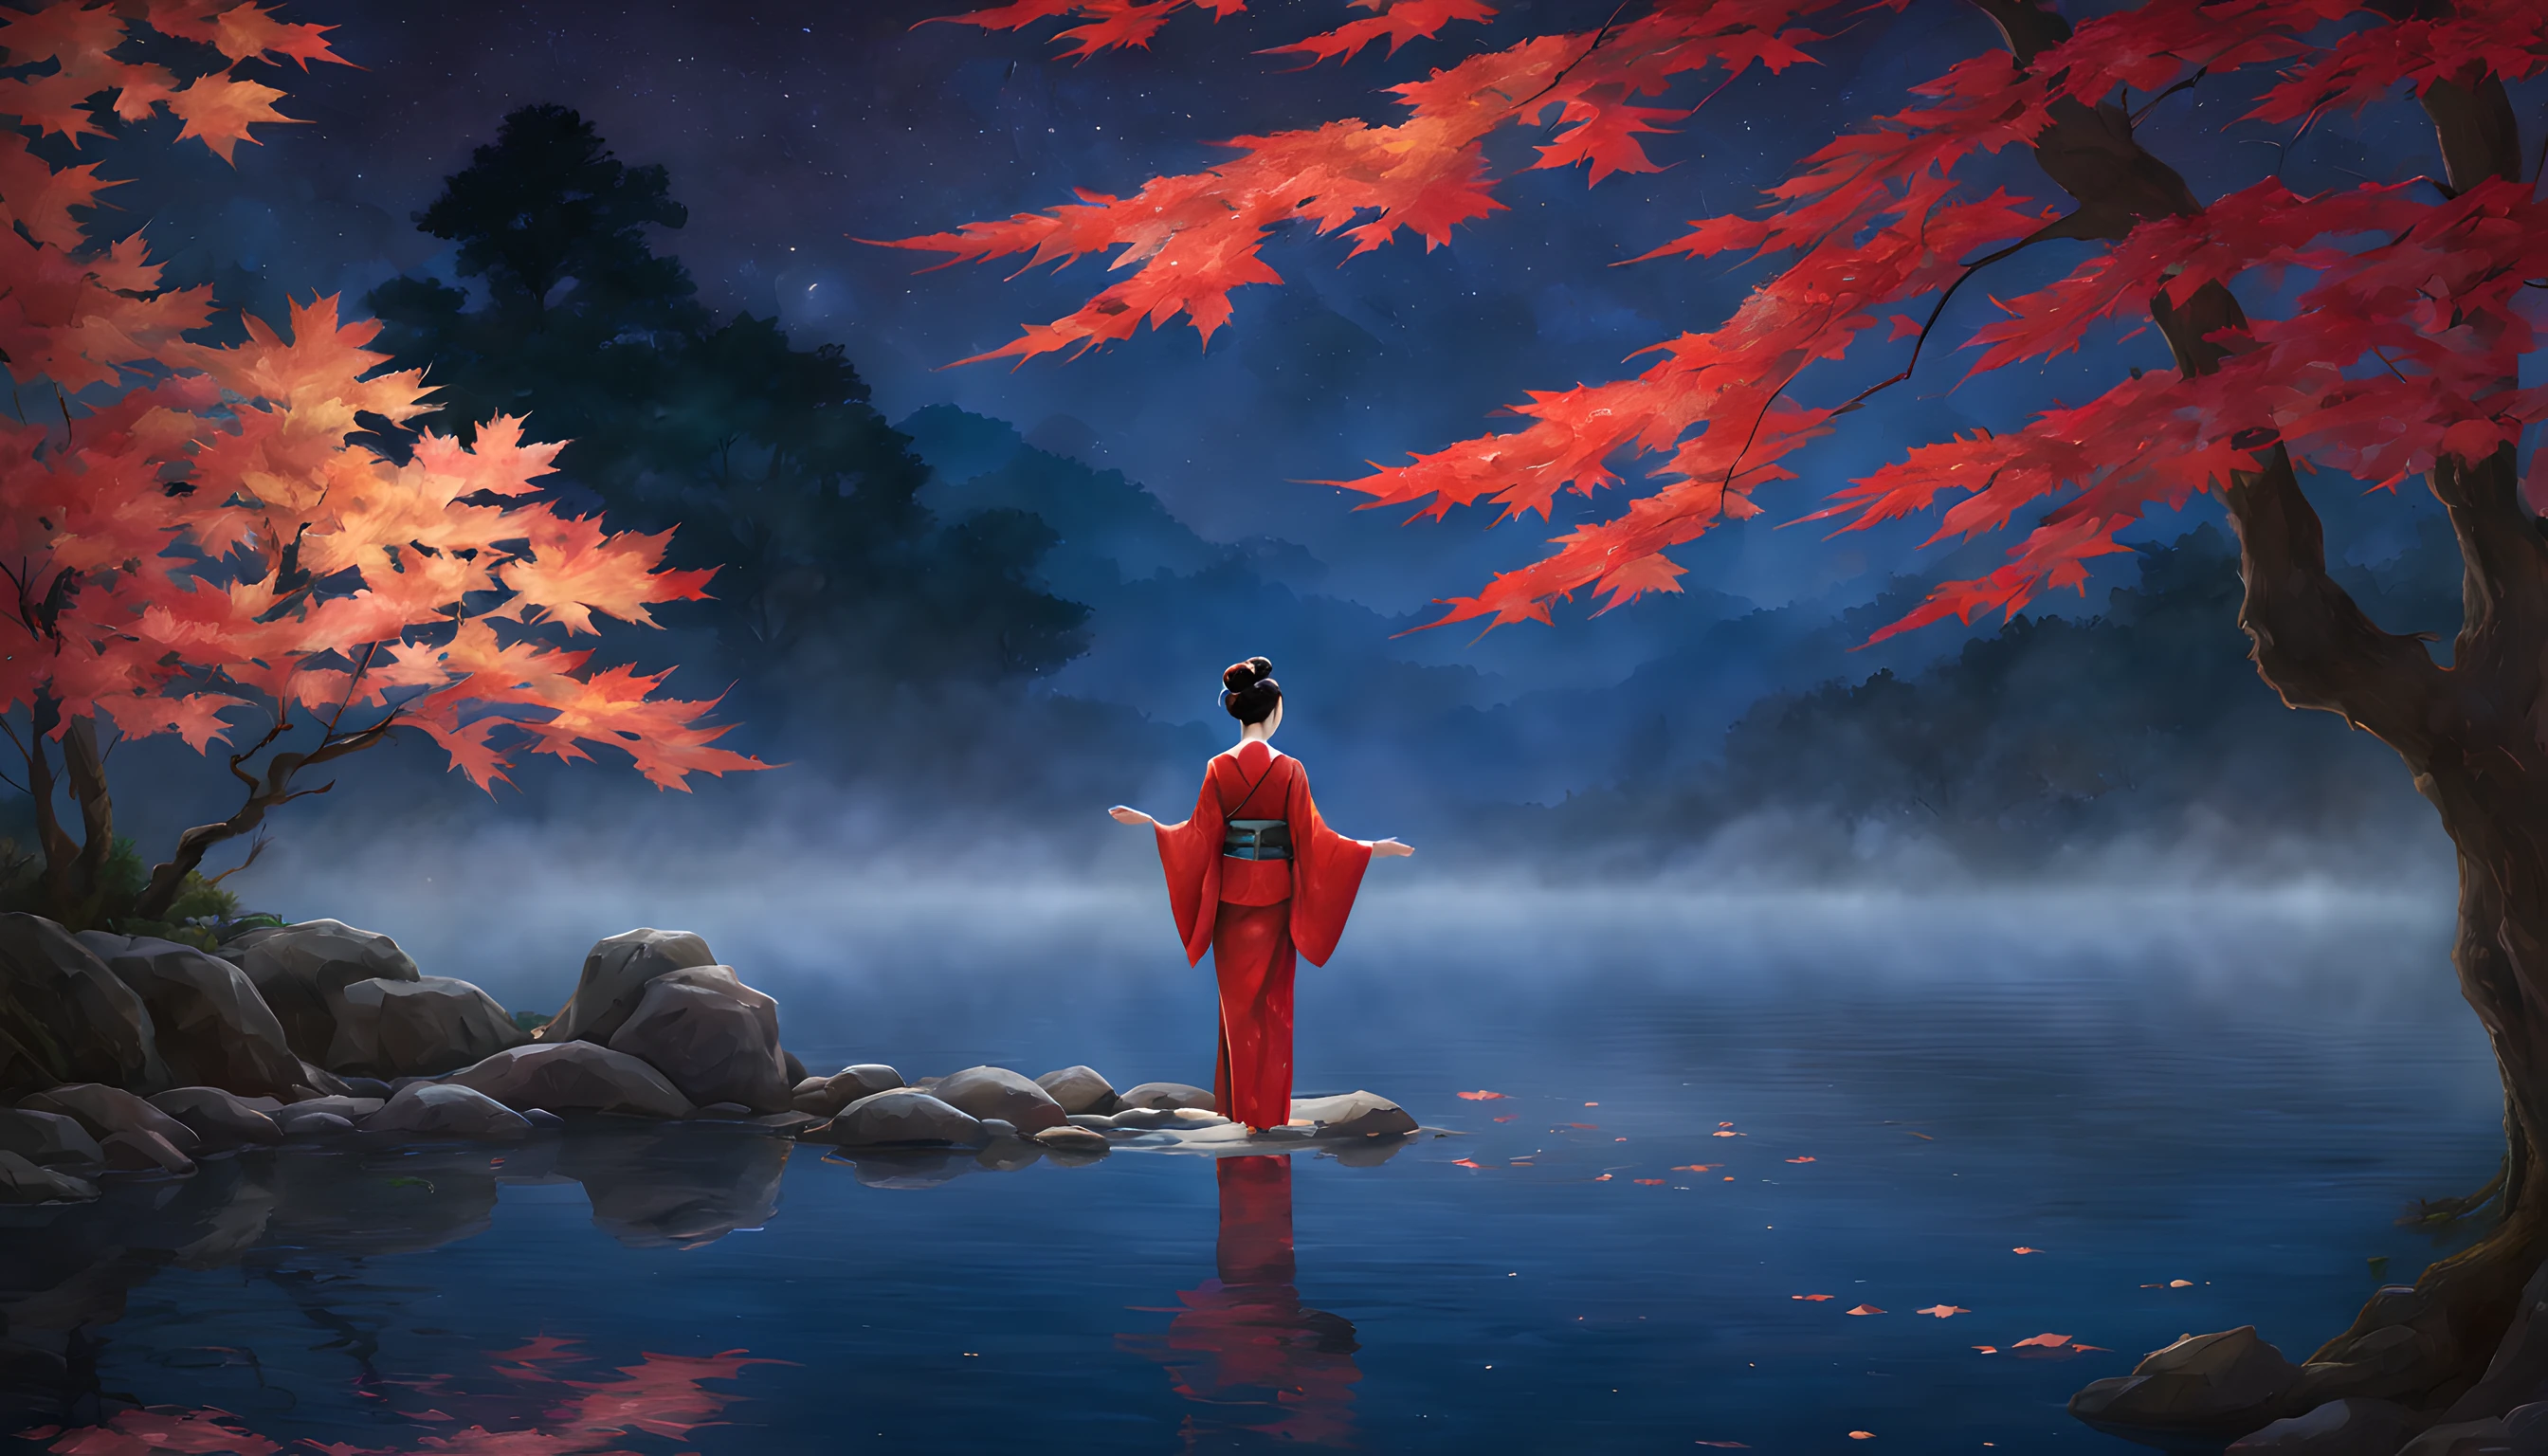 "Composez une scène nocturne captivante mettant en vedette un étang tranquille enveloppé par les teintes ardentes du feuillage d&#39;automne des feuilles d&#39;érable.. La composition doit mettre en valeur la proéminence des feuilles d&#39;érable et du majestueux érable qui se dresse à proximité.. Au premier plan, une Japonaise d&#39;une quarantaine d&#39;années se tient gracieusement, drapé dans un kimono rouge vif. Le kimono accentue son élégance, et sa beauté rayonne sous le clair de lune. Elle est une vision d&#39;une allure intemporelle, capturer l&#39;essence de la saison. La femme regarde l&#39;étang scintillant, où le reflet des feuilles d&#39;érable danse à la surface de l&#39;eau. Son expression est celle d&#39;une contemplation sereine, alors qu&#39;elle se plonge dans la beauté tranquille de la nuit. L&#39;arrière-plan met en valeur le magnifique érable, ses branches ornées de feuilles resplendissantes qui semblent capter le clair de lune. L&#39;étang reflète la scène éthérée, ajoutant à l&#39;enchantement du moment. La composition globale doit créer un sentiment de sérénité et de respect pour la beauté de la nature.. Assurez-vous que la beauté captivante de la femme et l&#39;éclat des feuilles d&#39;érable occupent une place centrale dans ce tableau automnal fascinant.."